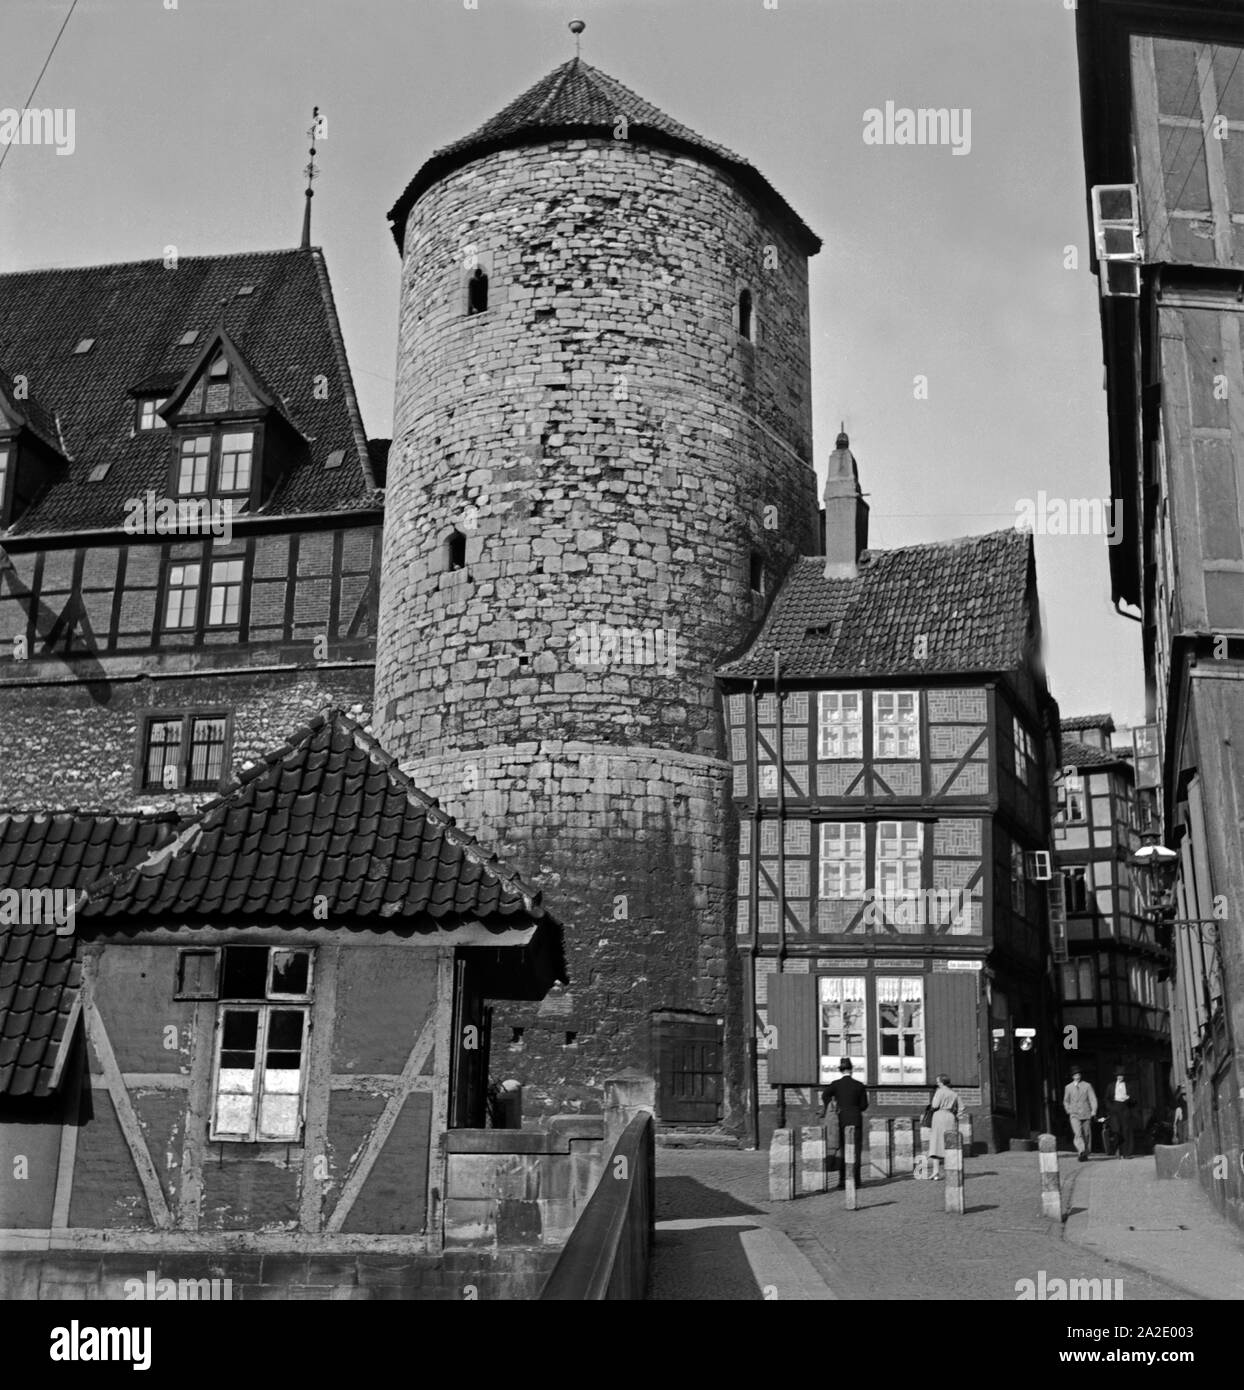 Der Beginenturm am Hohen Ufer in Hannover, Deutschland 1930er Jahre. Beguine's tower at Hanover, Germany 1930s. Stock Photo